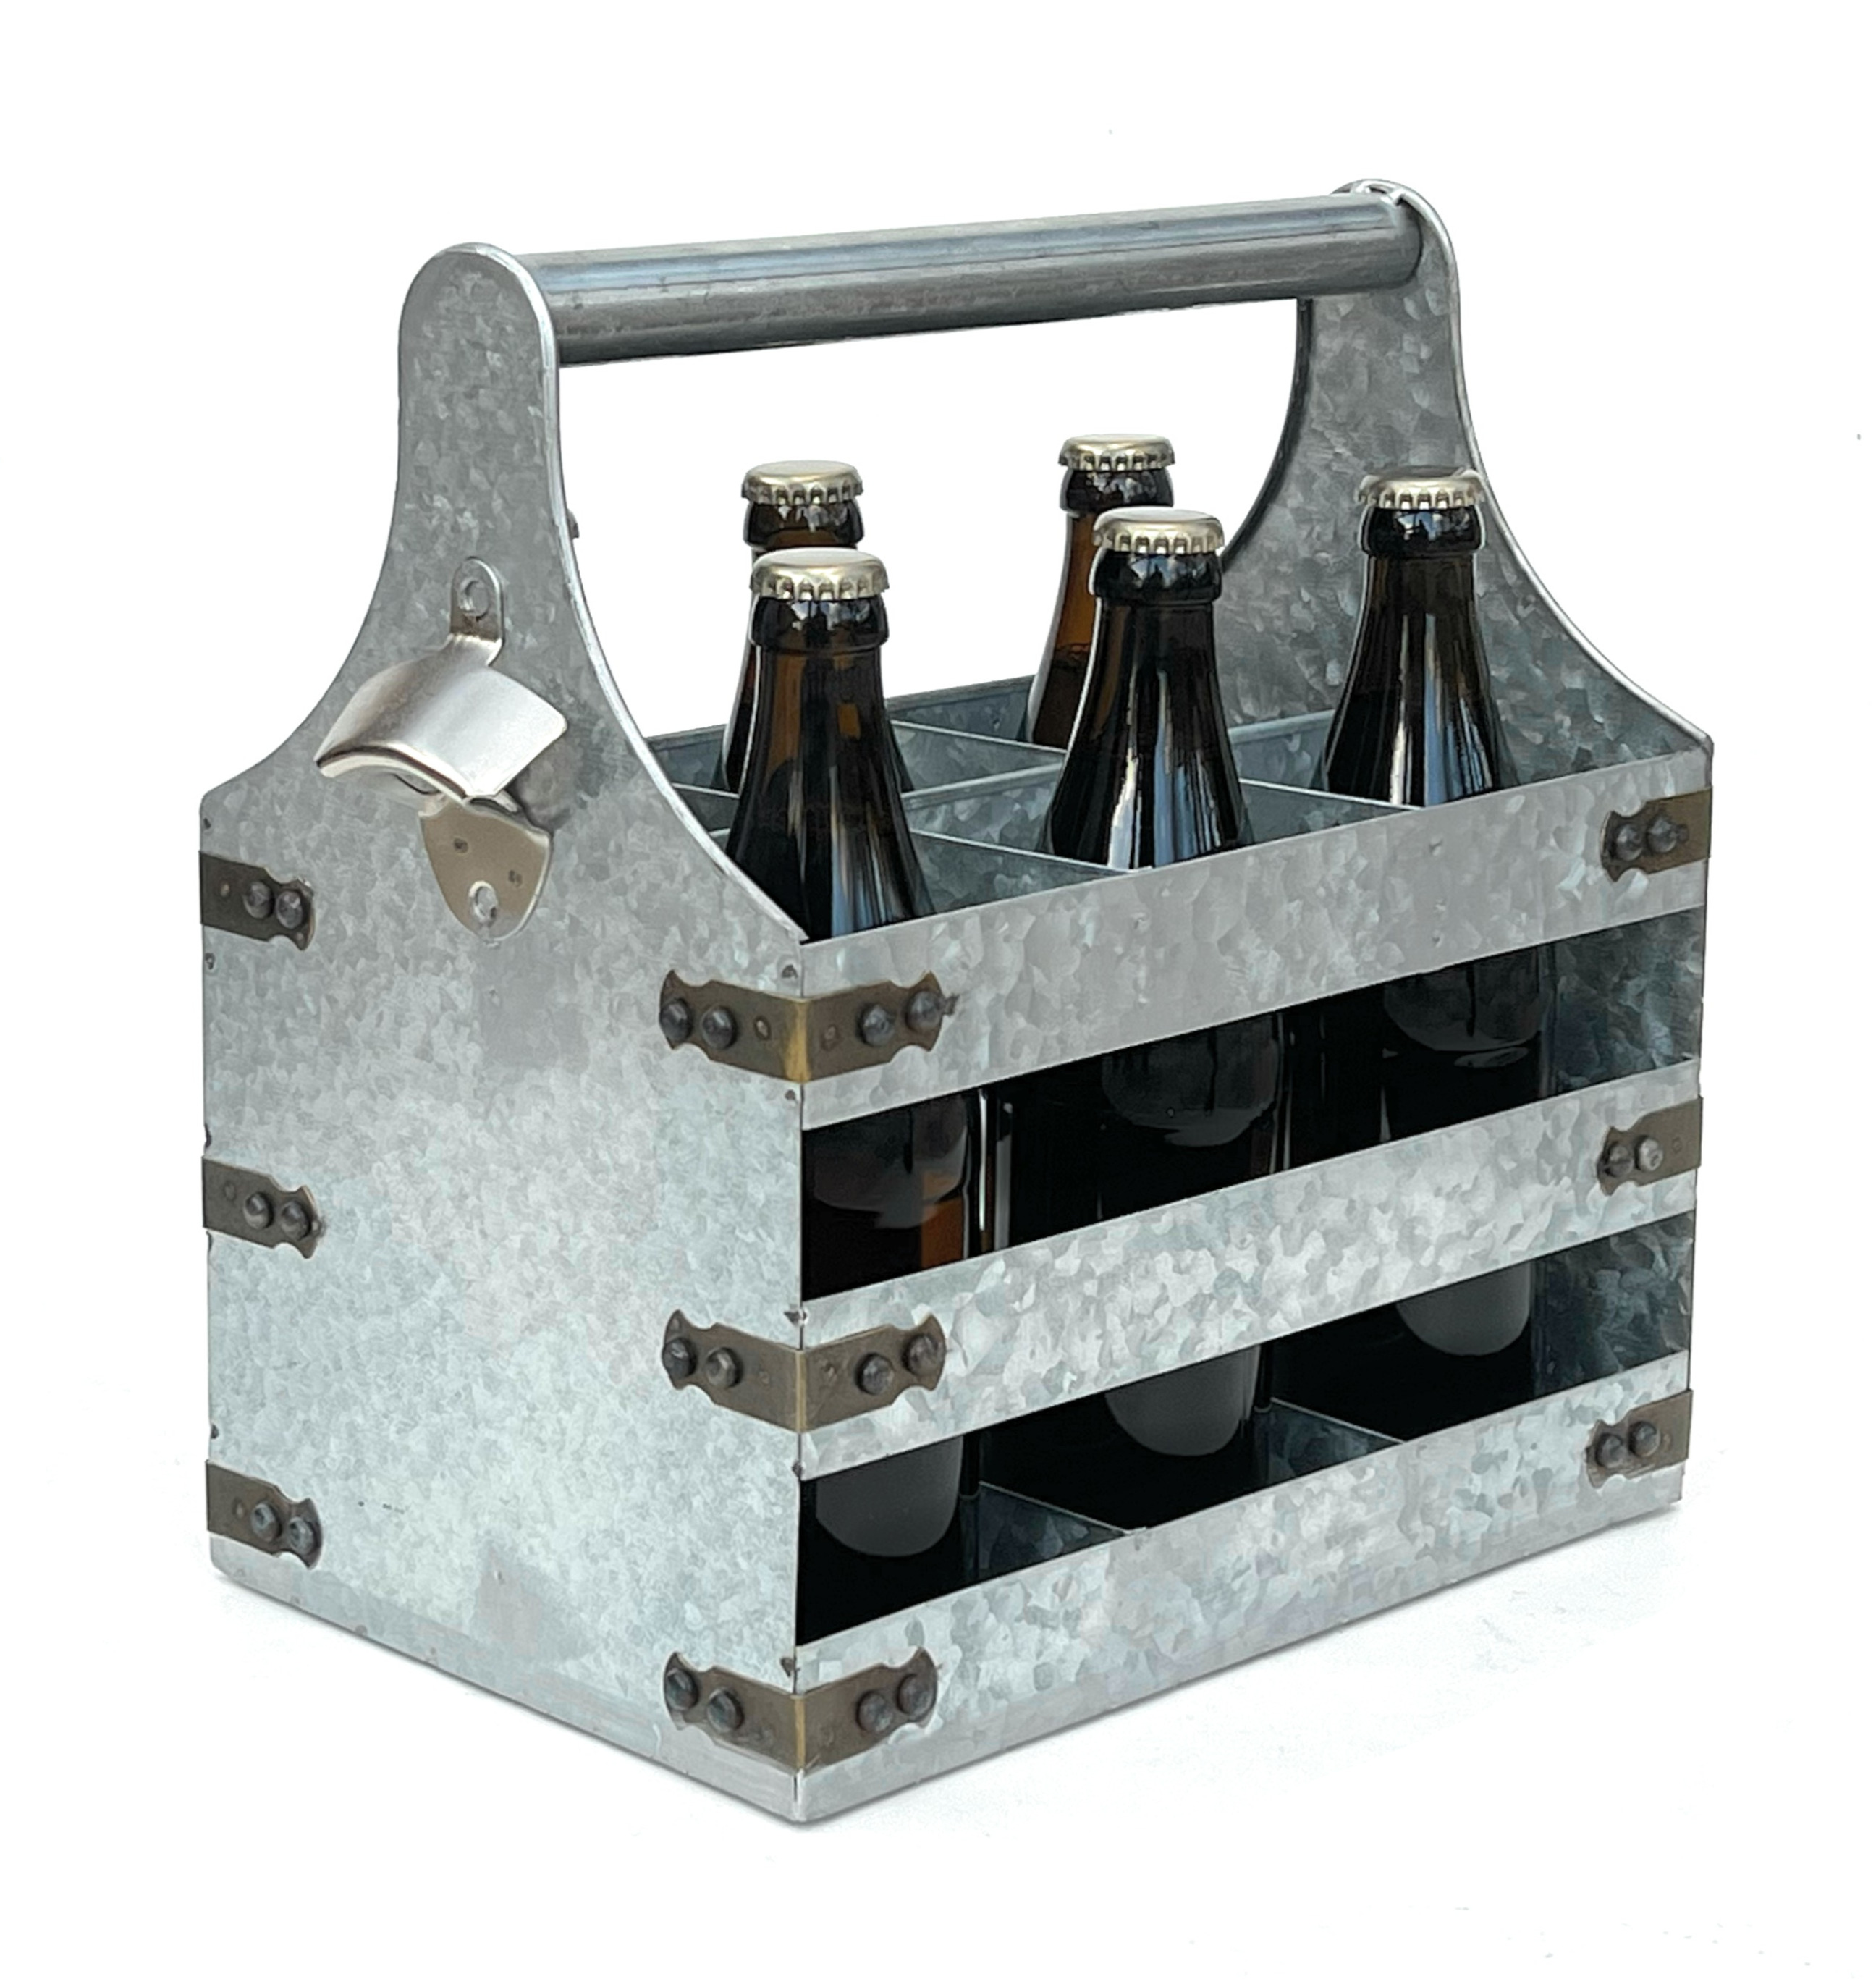 DanDiBo Bierträger Metall mit Öffner 96403 Flaschenträger 6 Flaschen  Flaschenöffner Flaschenkorb Männerhandtasche Männergeschenke -  DanDiBo-Ambiente